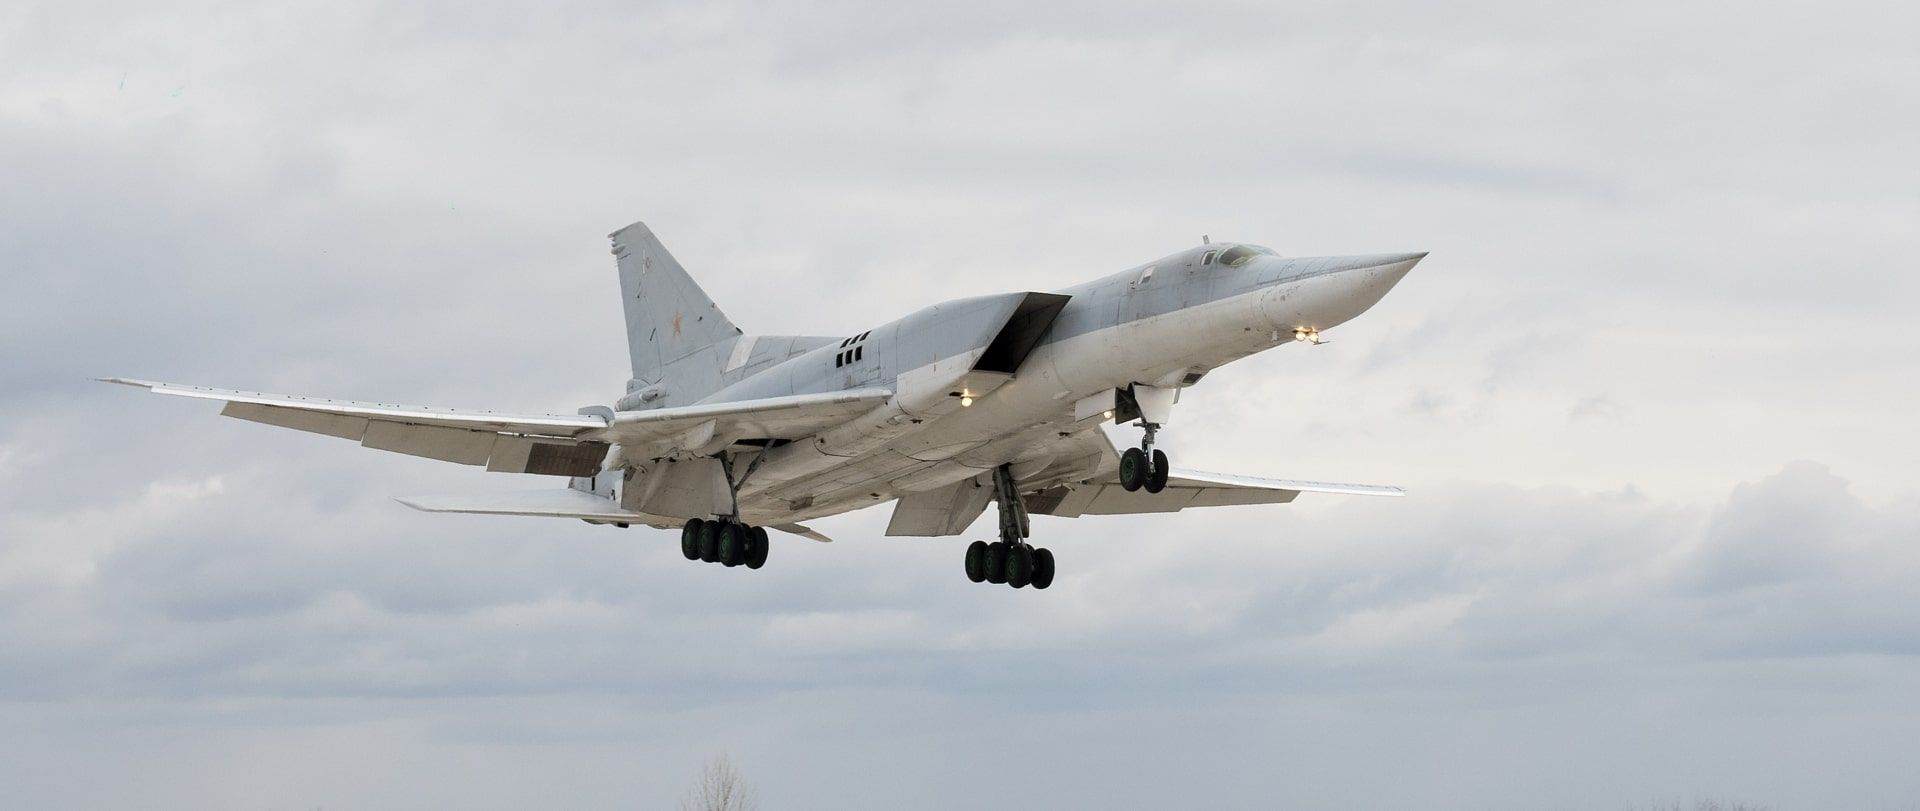 Russland hat offiziell bestätigt, dass eine zu einer Rakete umgebaute ukrainische Tu-141-Drohne 3 strategische Tu-22M3-Bomber-Raketenträger beschädigt hat